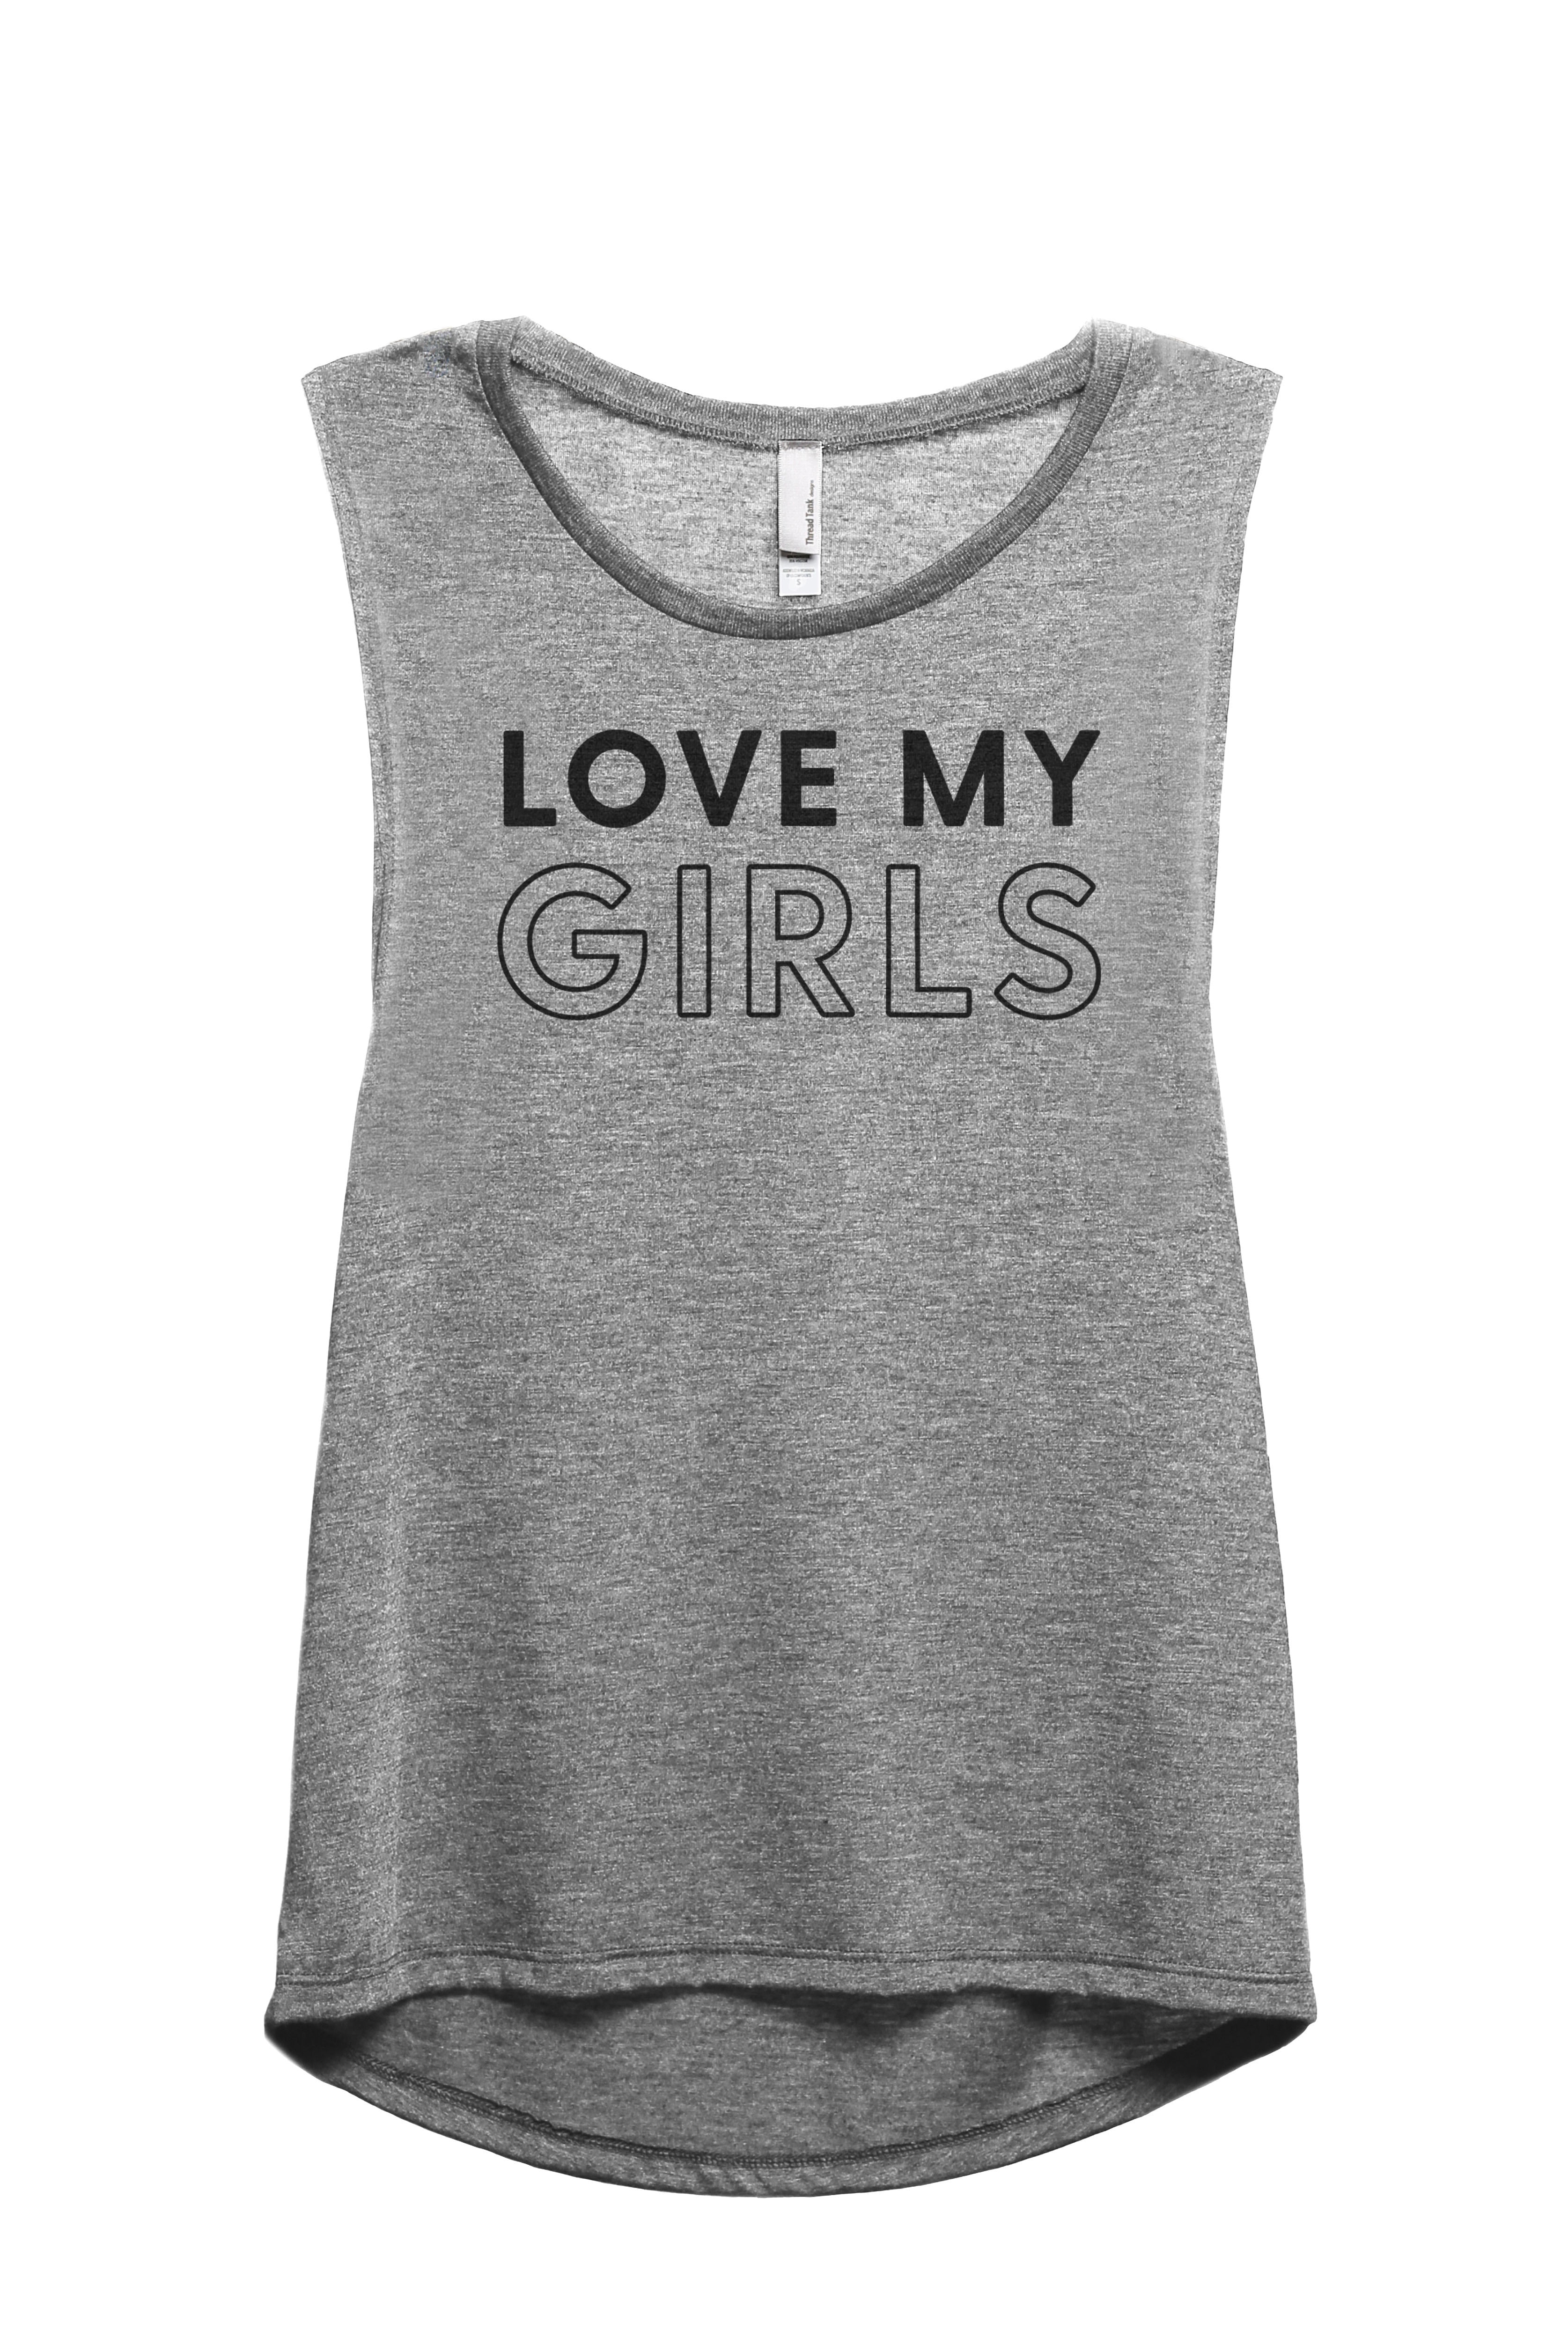 Love My Girls Women's Fashion Sleeveless Muscle Workout Yoga Tank